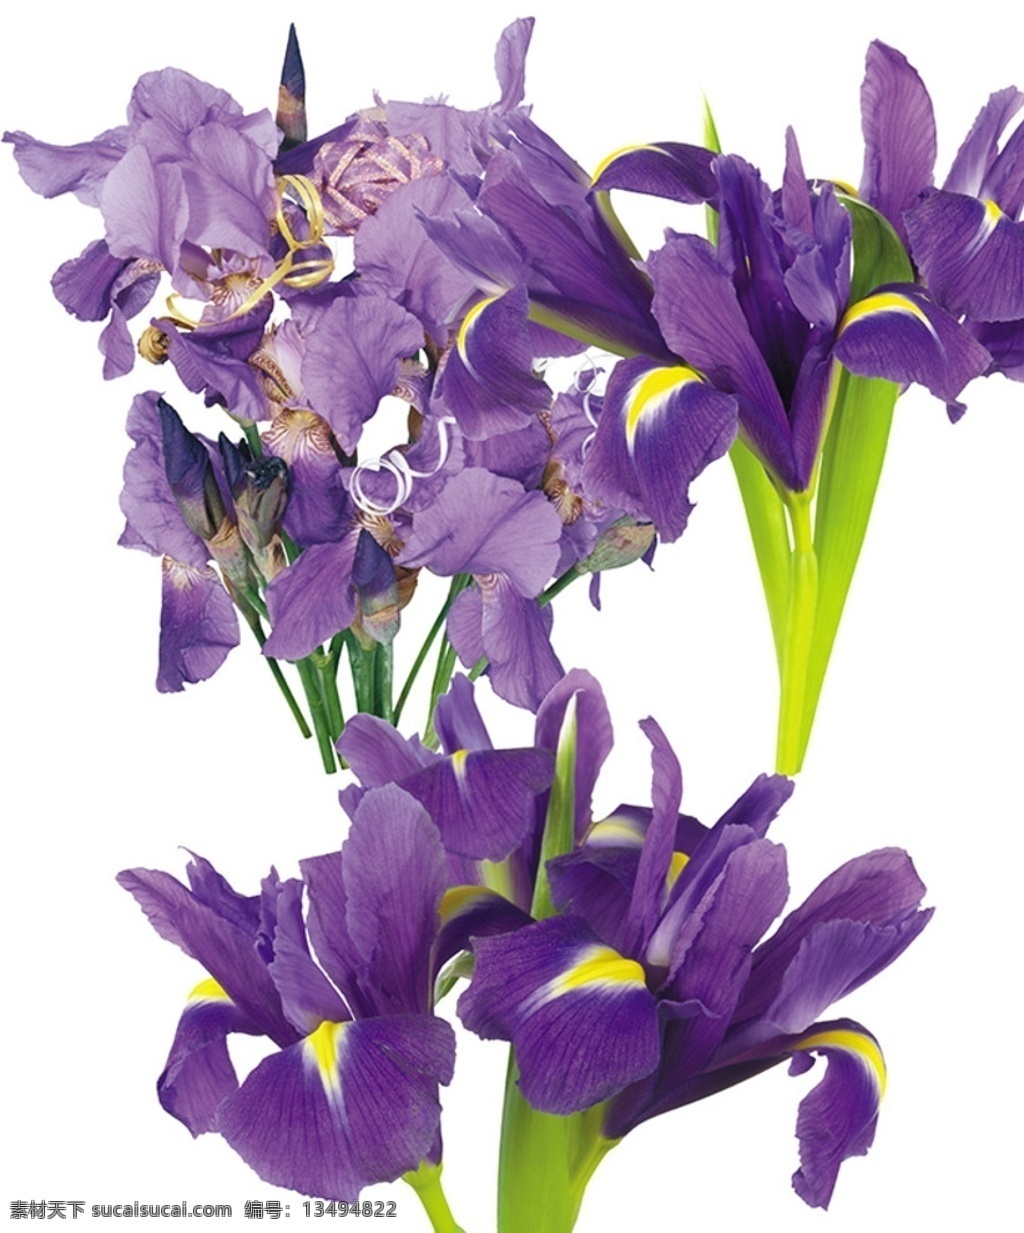 鸢尾花 紫色鸢尾花 鸢尾花花束 鸢尾花素材 爱丽丝 iris 分层